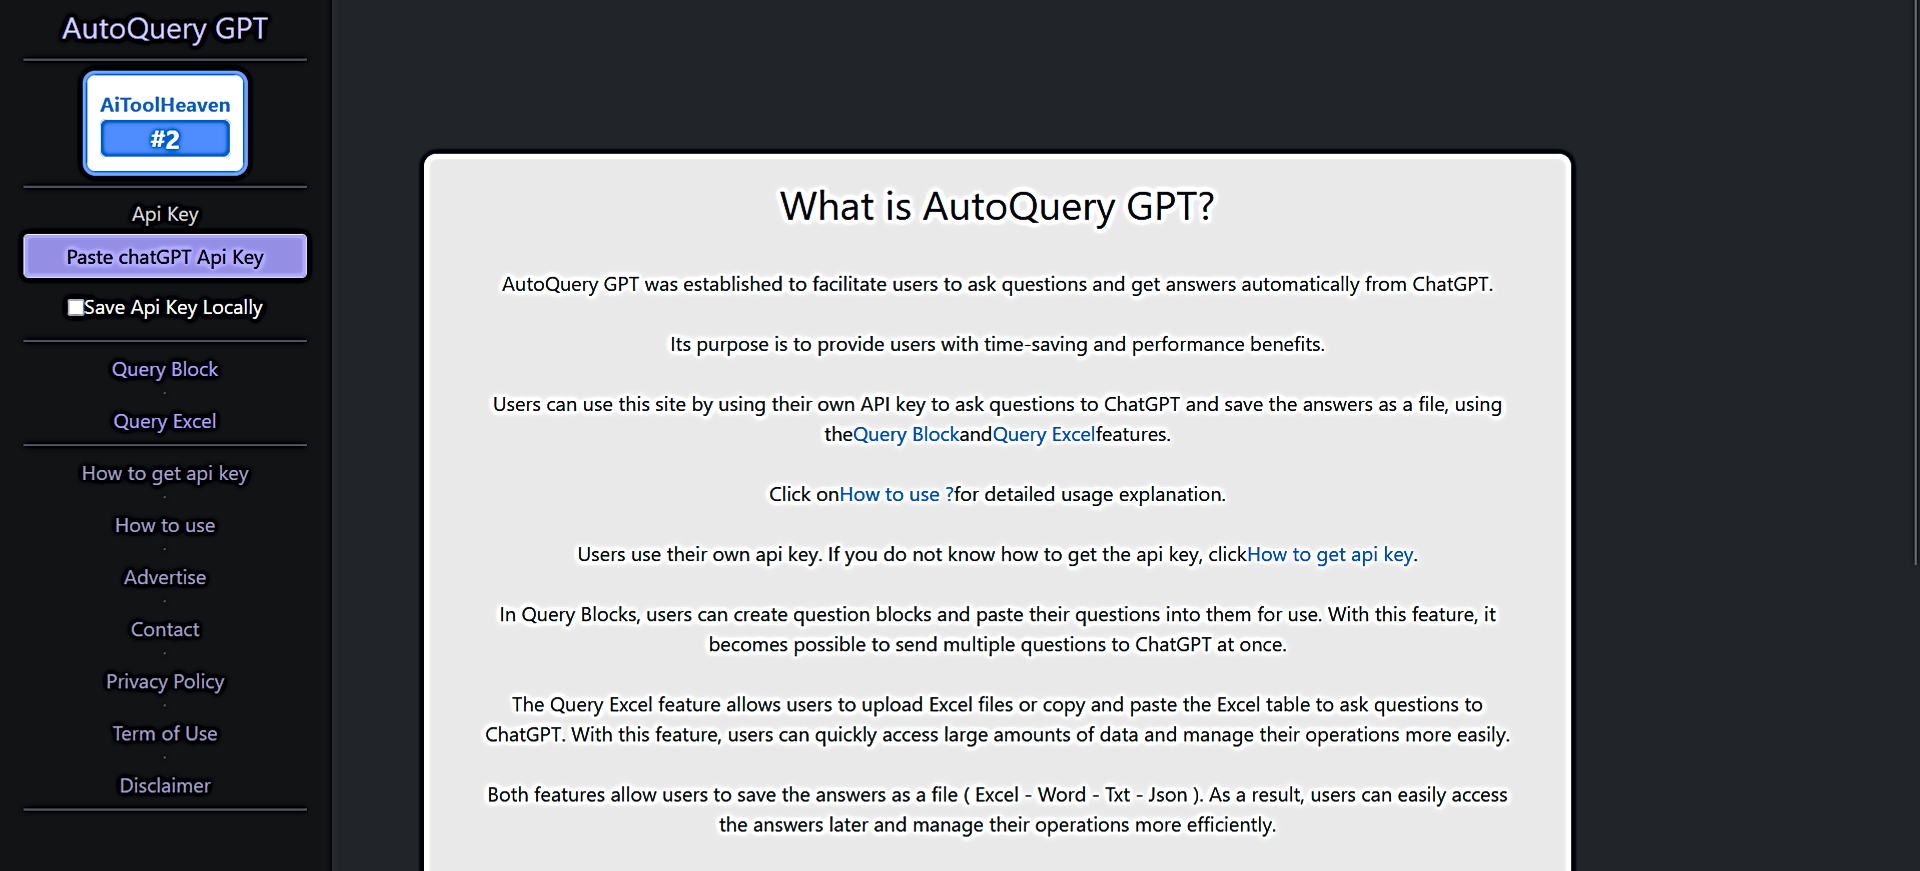 AutoQuery GPT featured